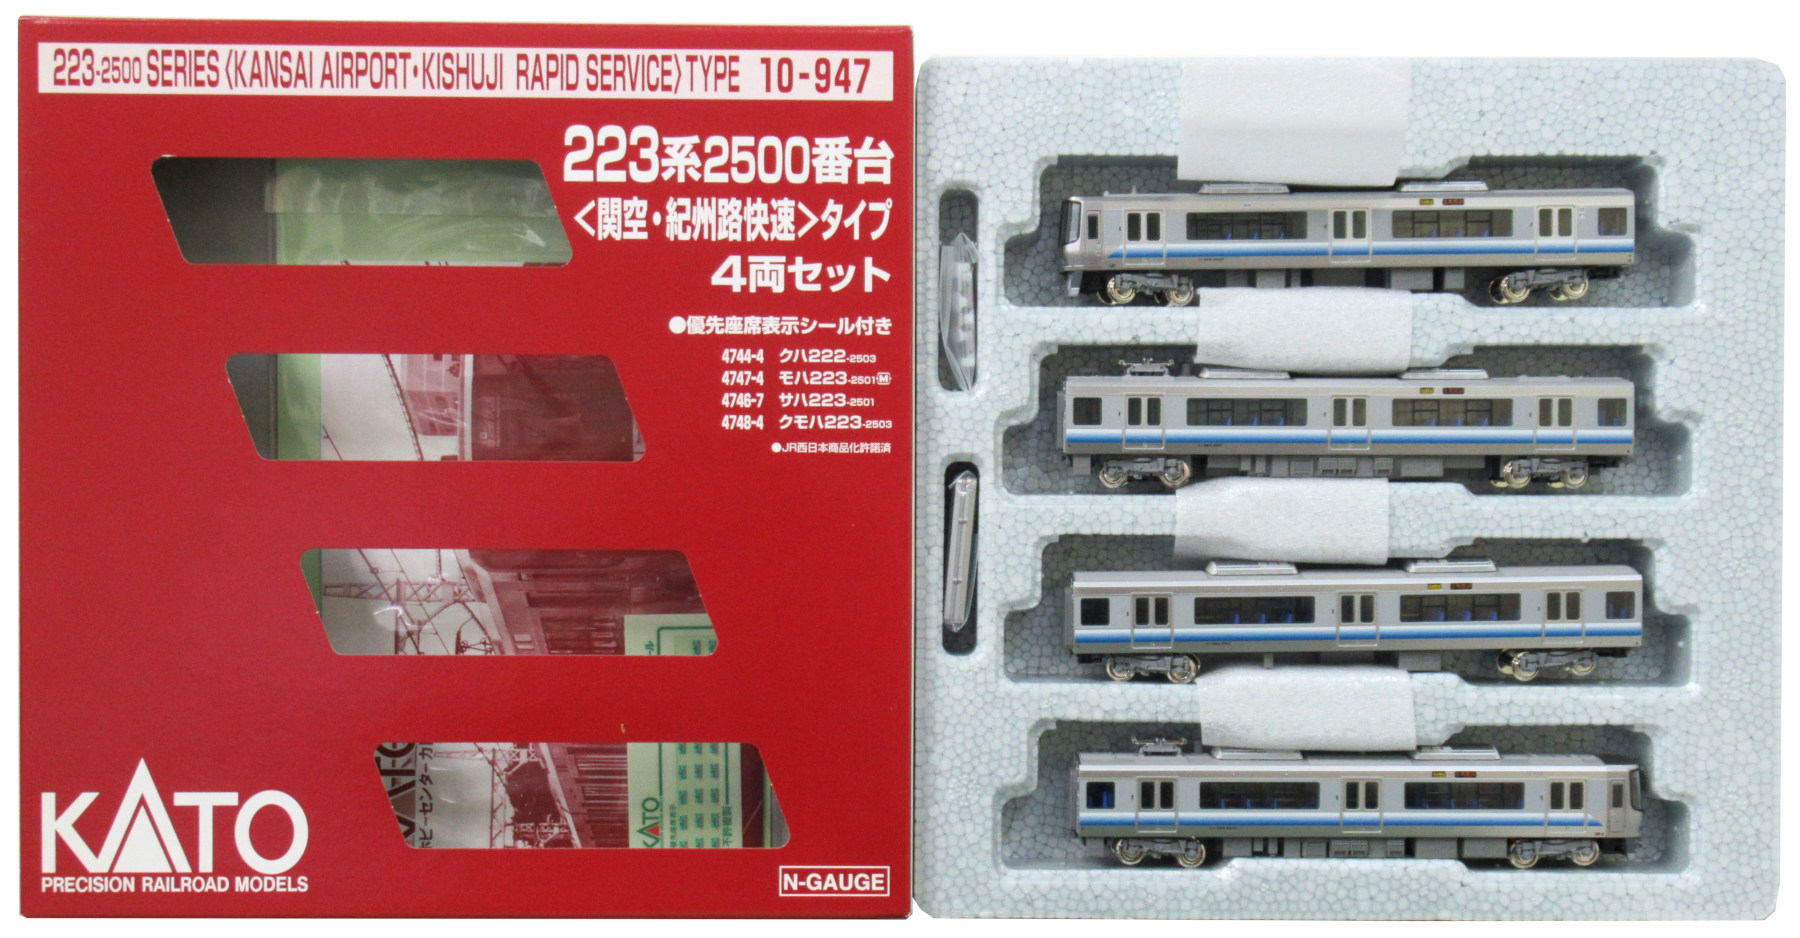 公式]鉄道模型(10-947223系2500番台(関空・紀州路快速)タイプ 4両 